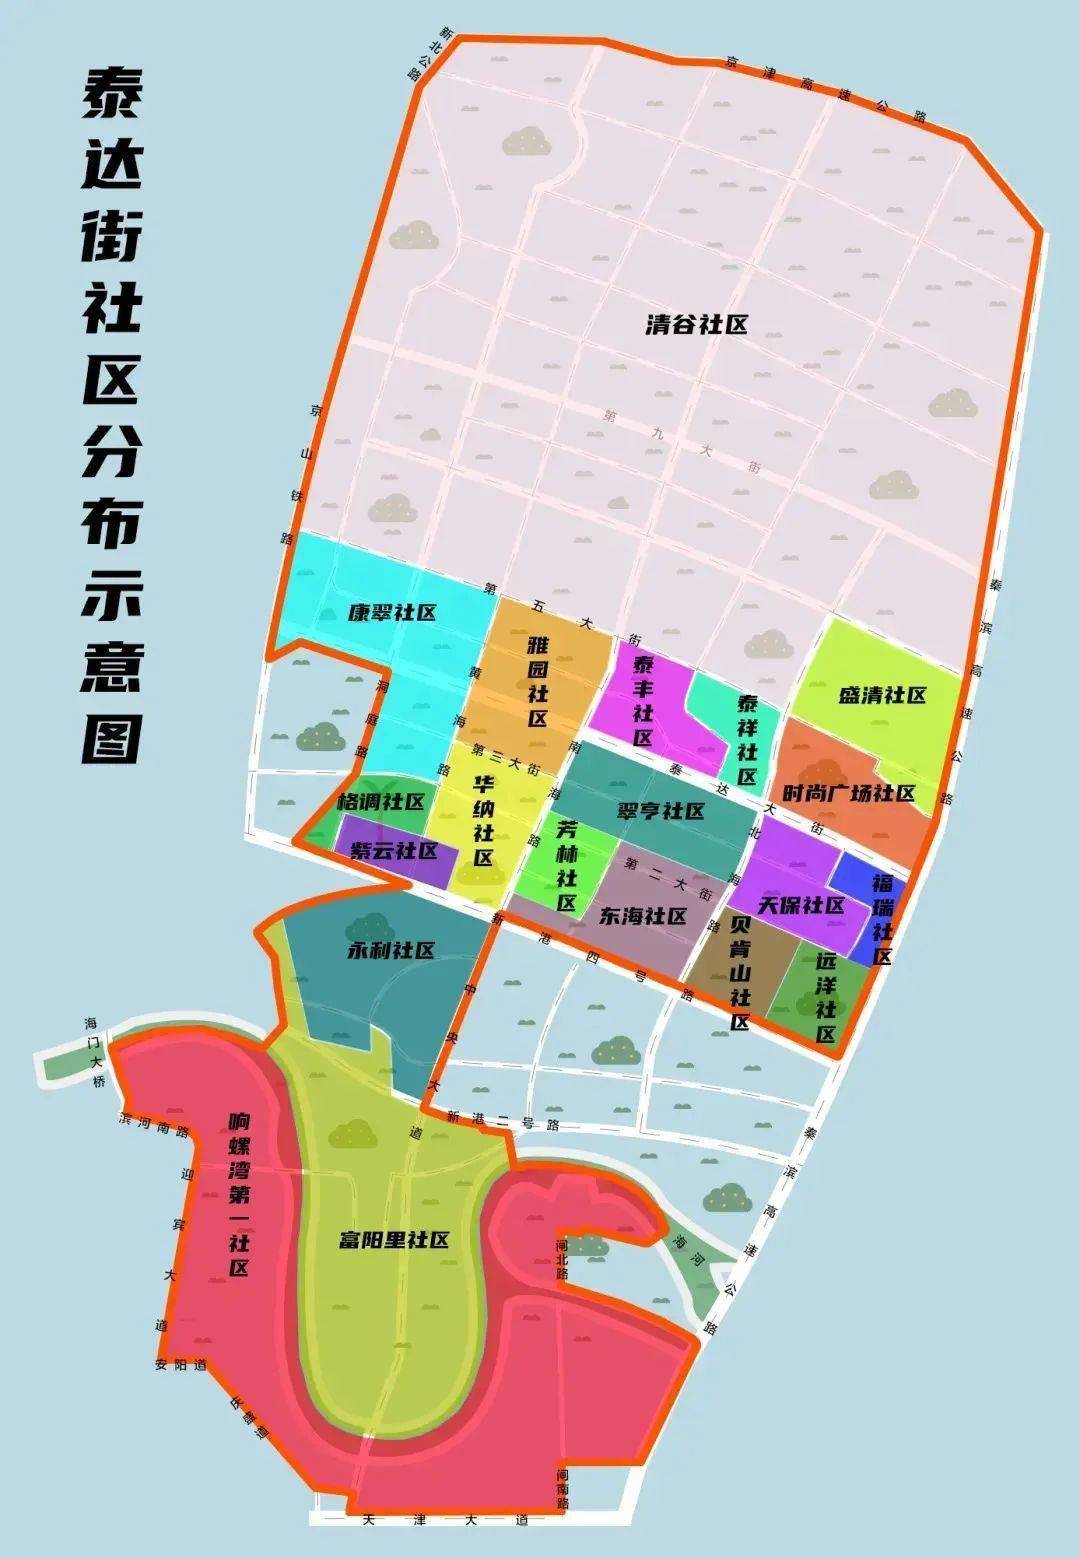 滨海新区泰达街道20个社区划片首度公布